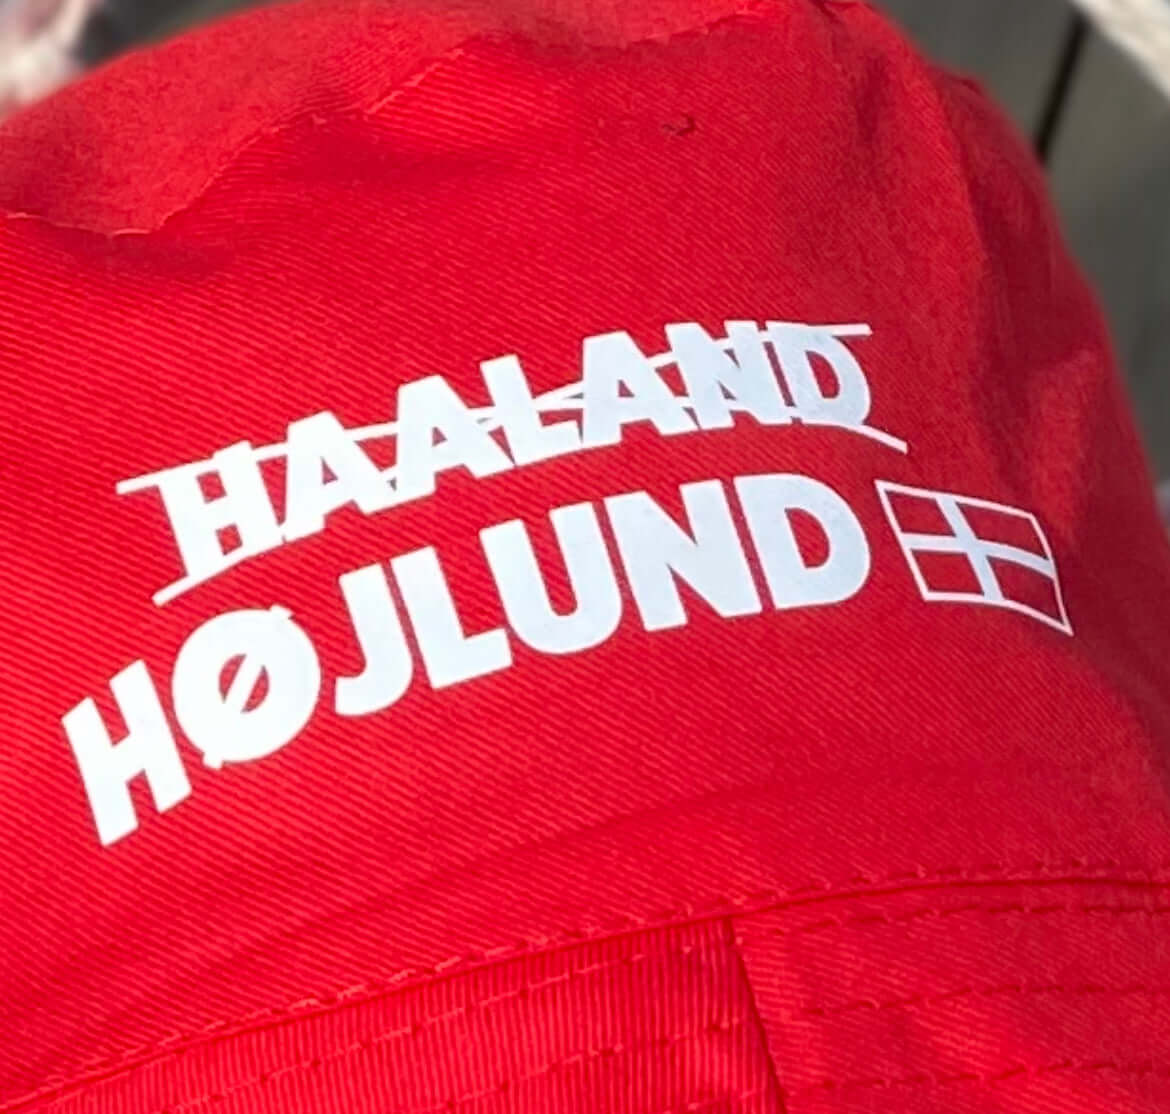 Højlund X Haaland "Højlund i hatten" bøllehat